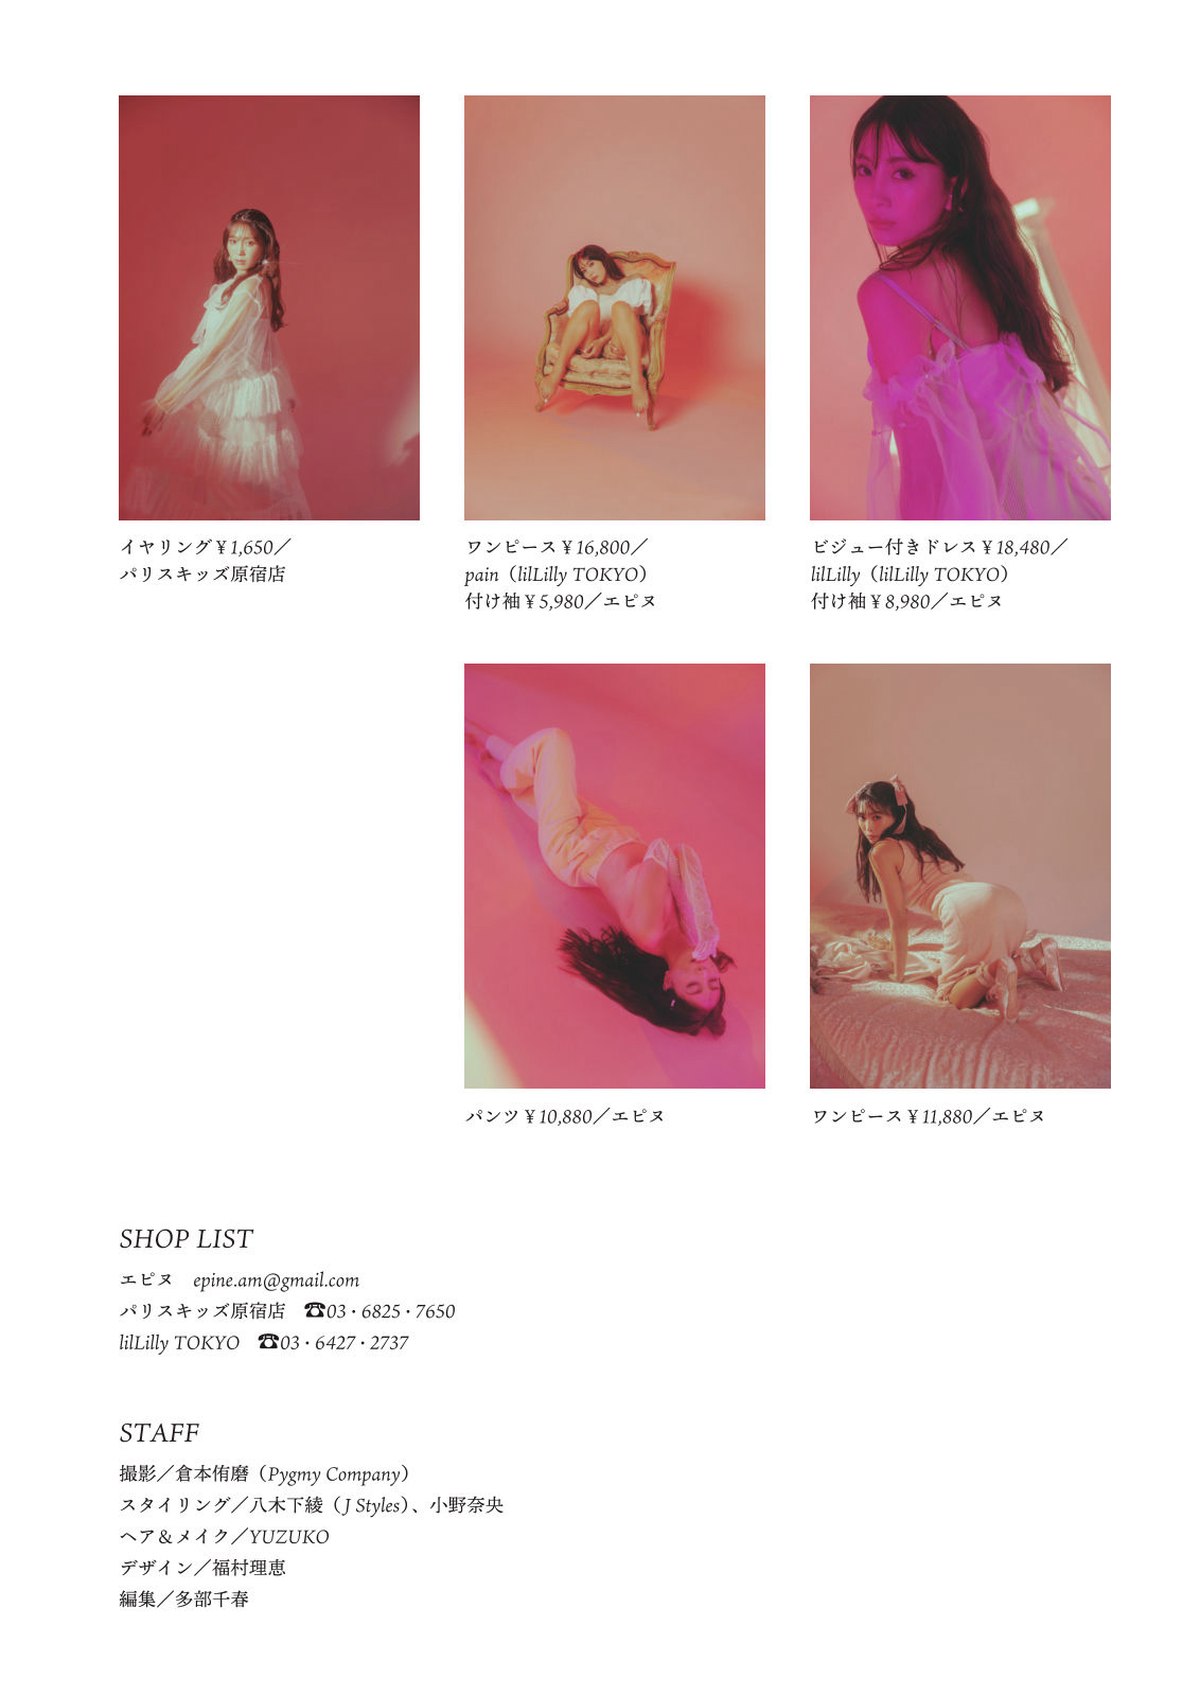 Digital-Only-PECHE-Supervised-2022-12-24-Tomomi-Morisaki-森咲智美-LOVE-ART-2022-B-0054-5215870110.jpg